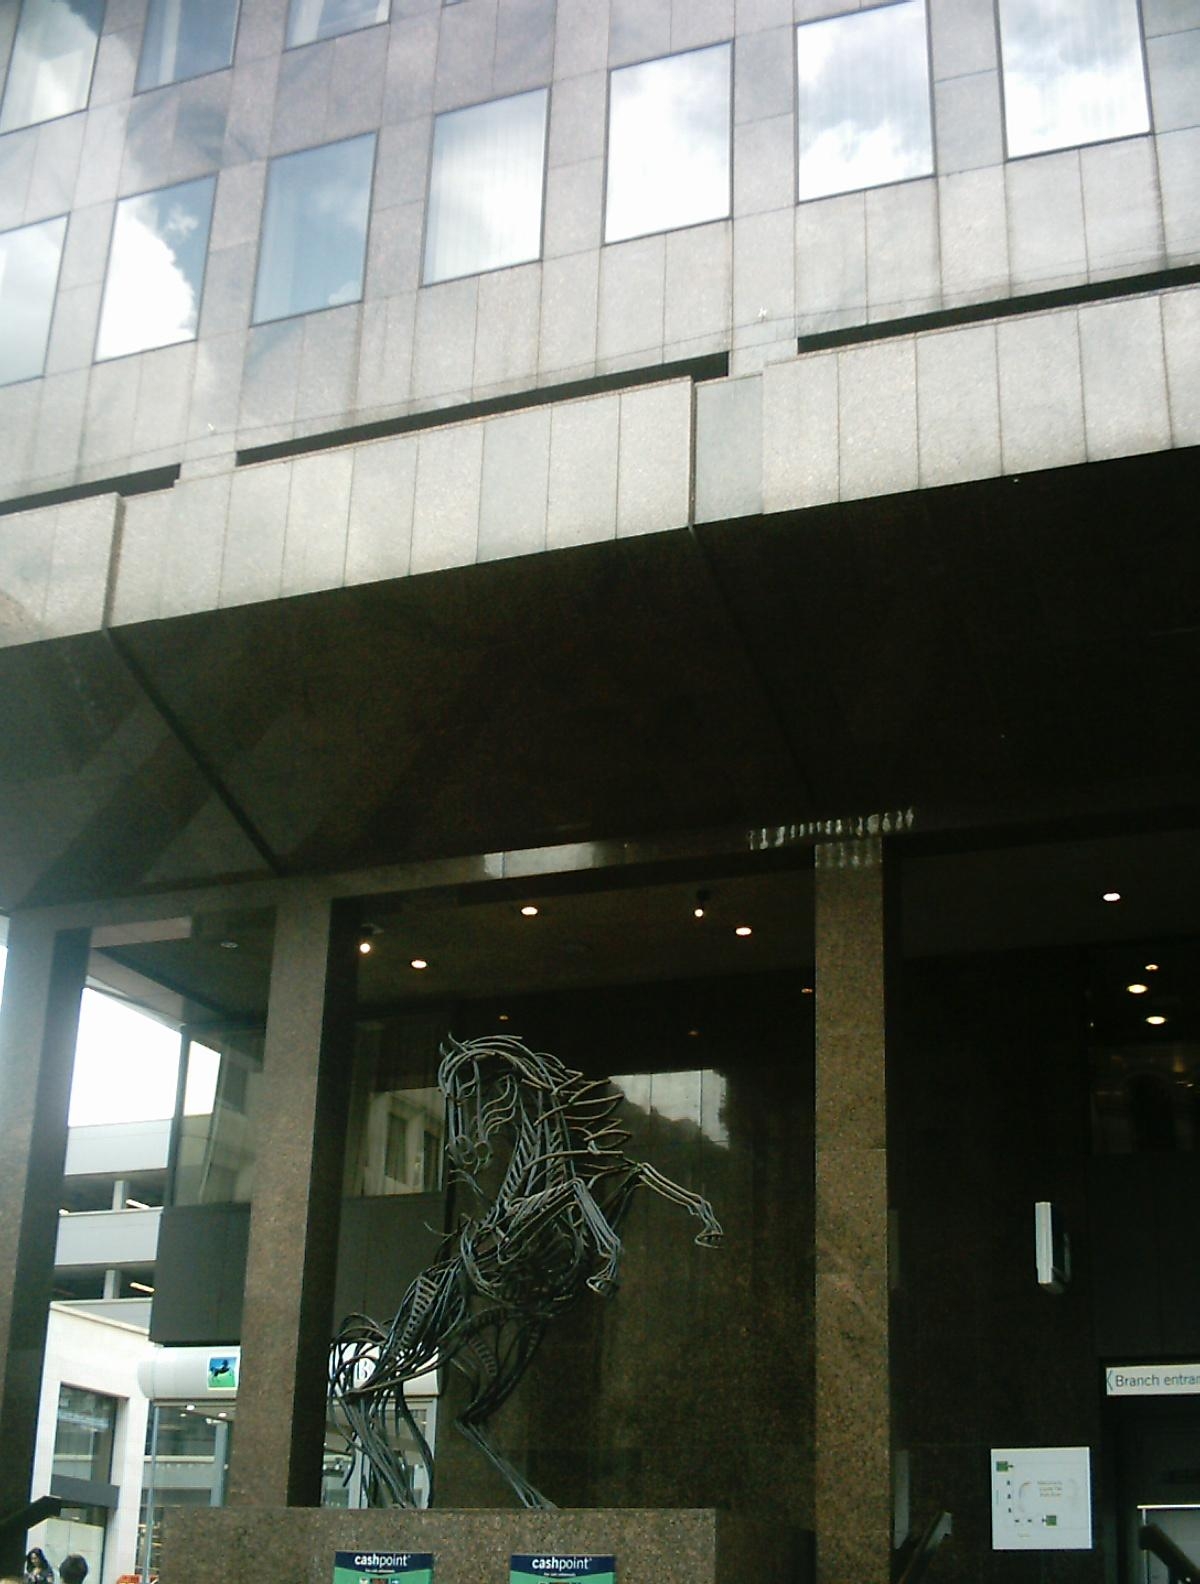 9. Филиал Lloyds TSB, со скульптурой черного коня (так называемый Cancara ) на переднем плане